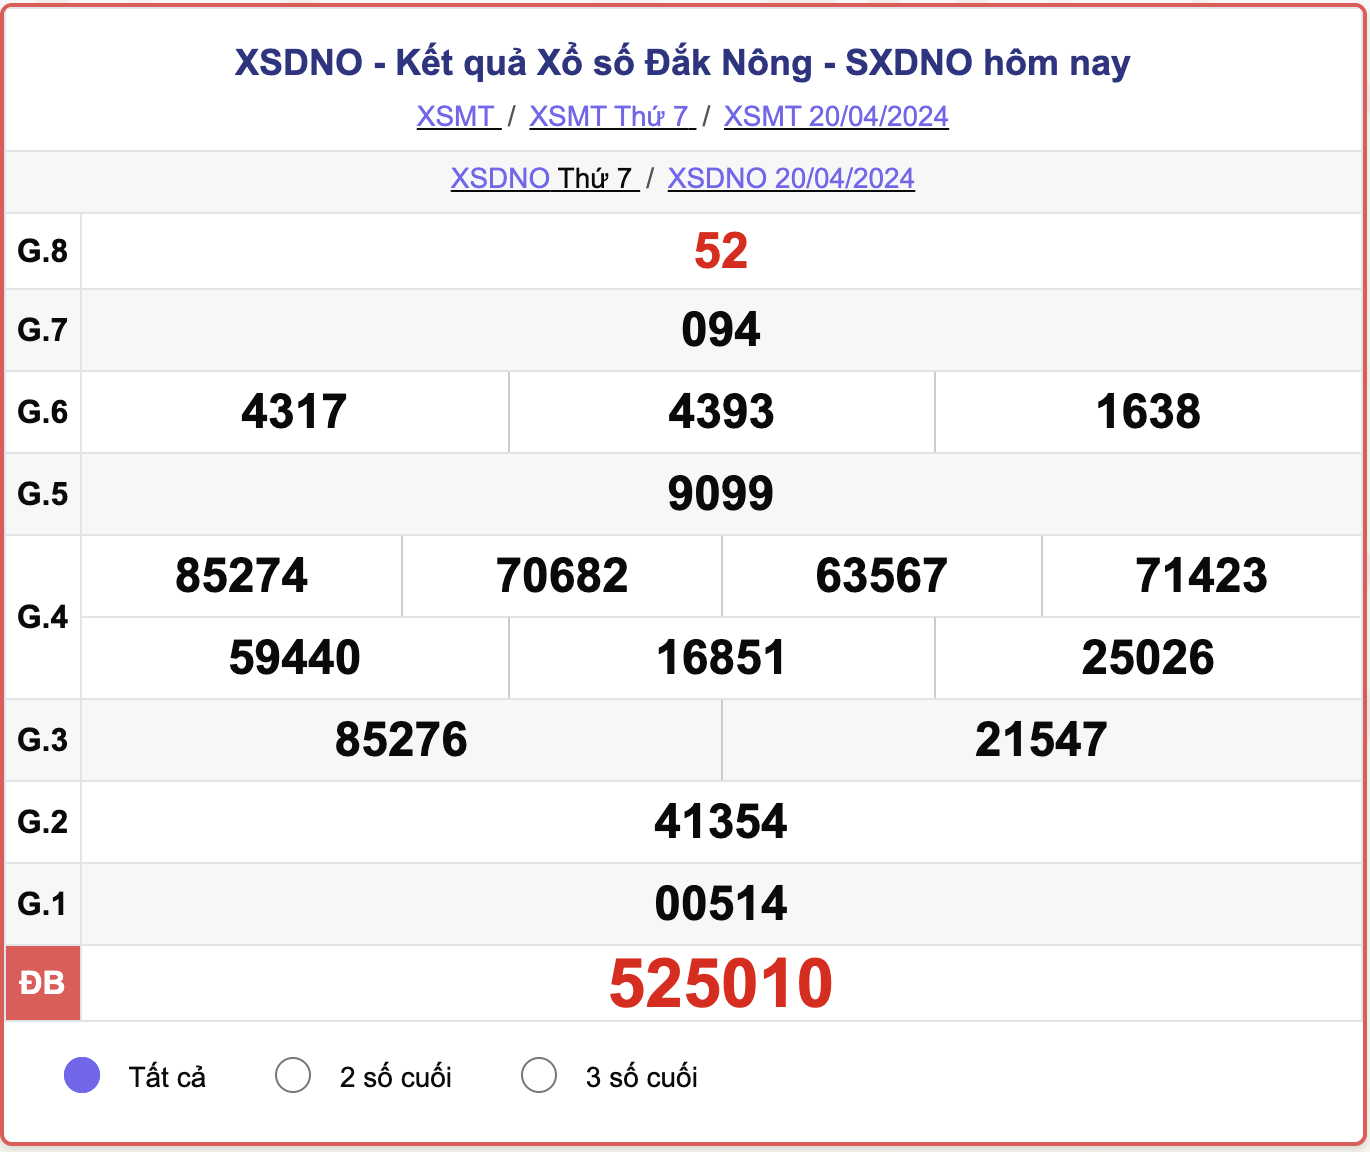 XSDNO thứ 7, kết quả xổ số Đắk Nông ngày 20/4/2024.